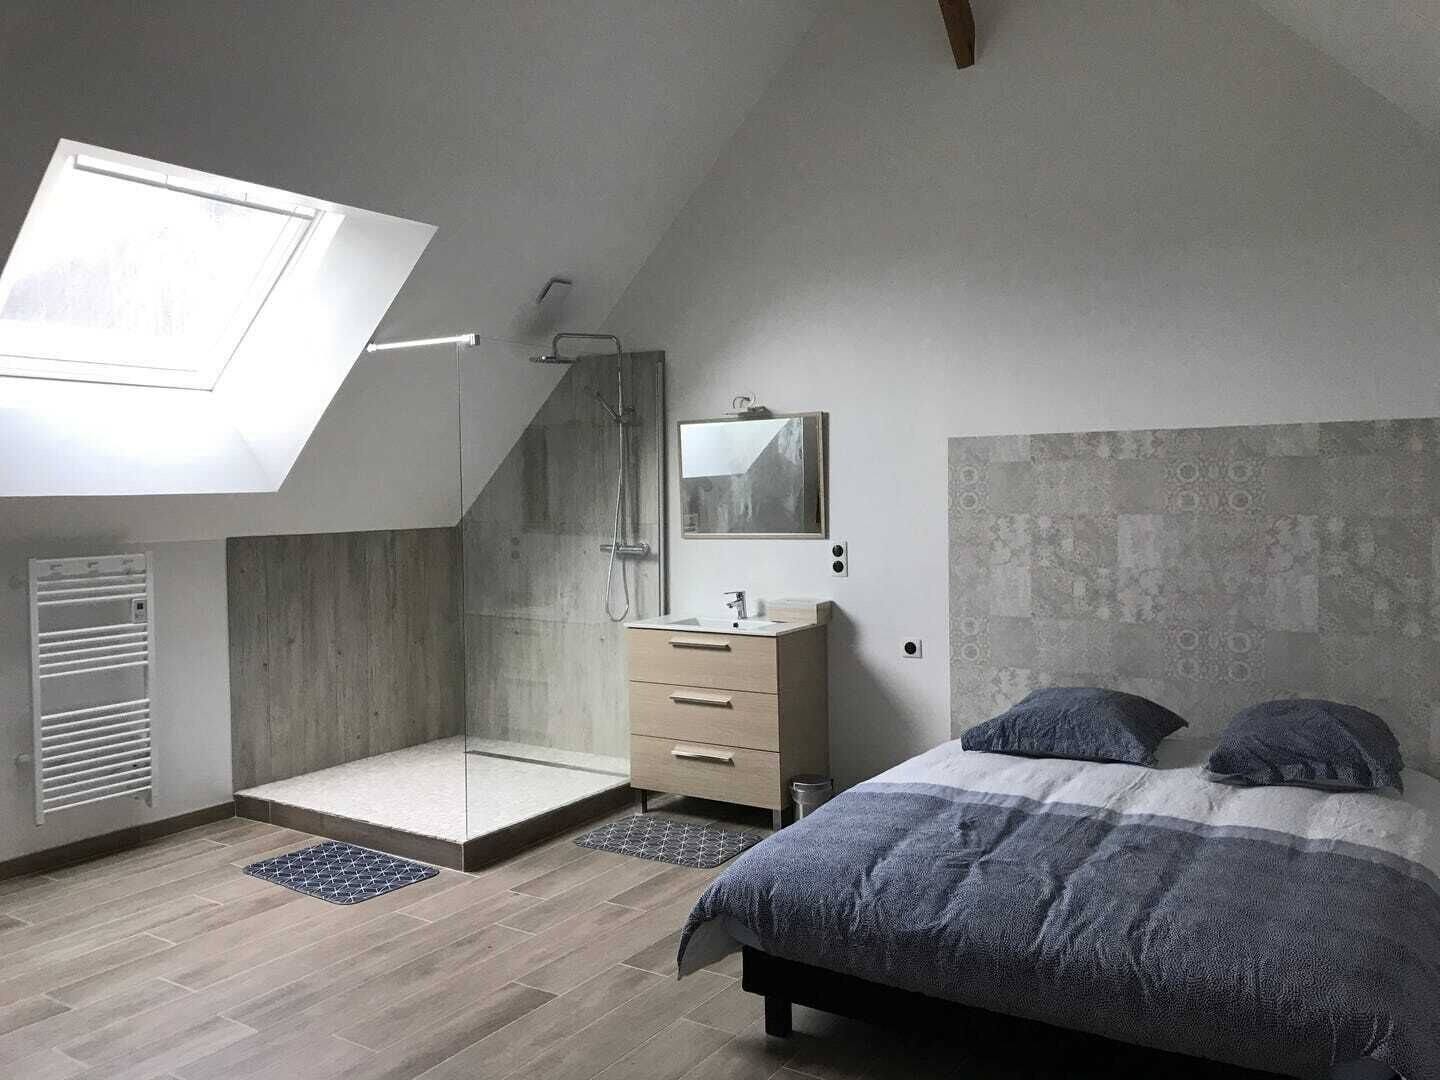 Bedroom 1, LE CHARME D OGNES, Aisne